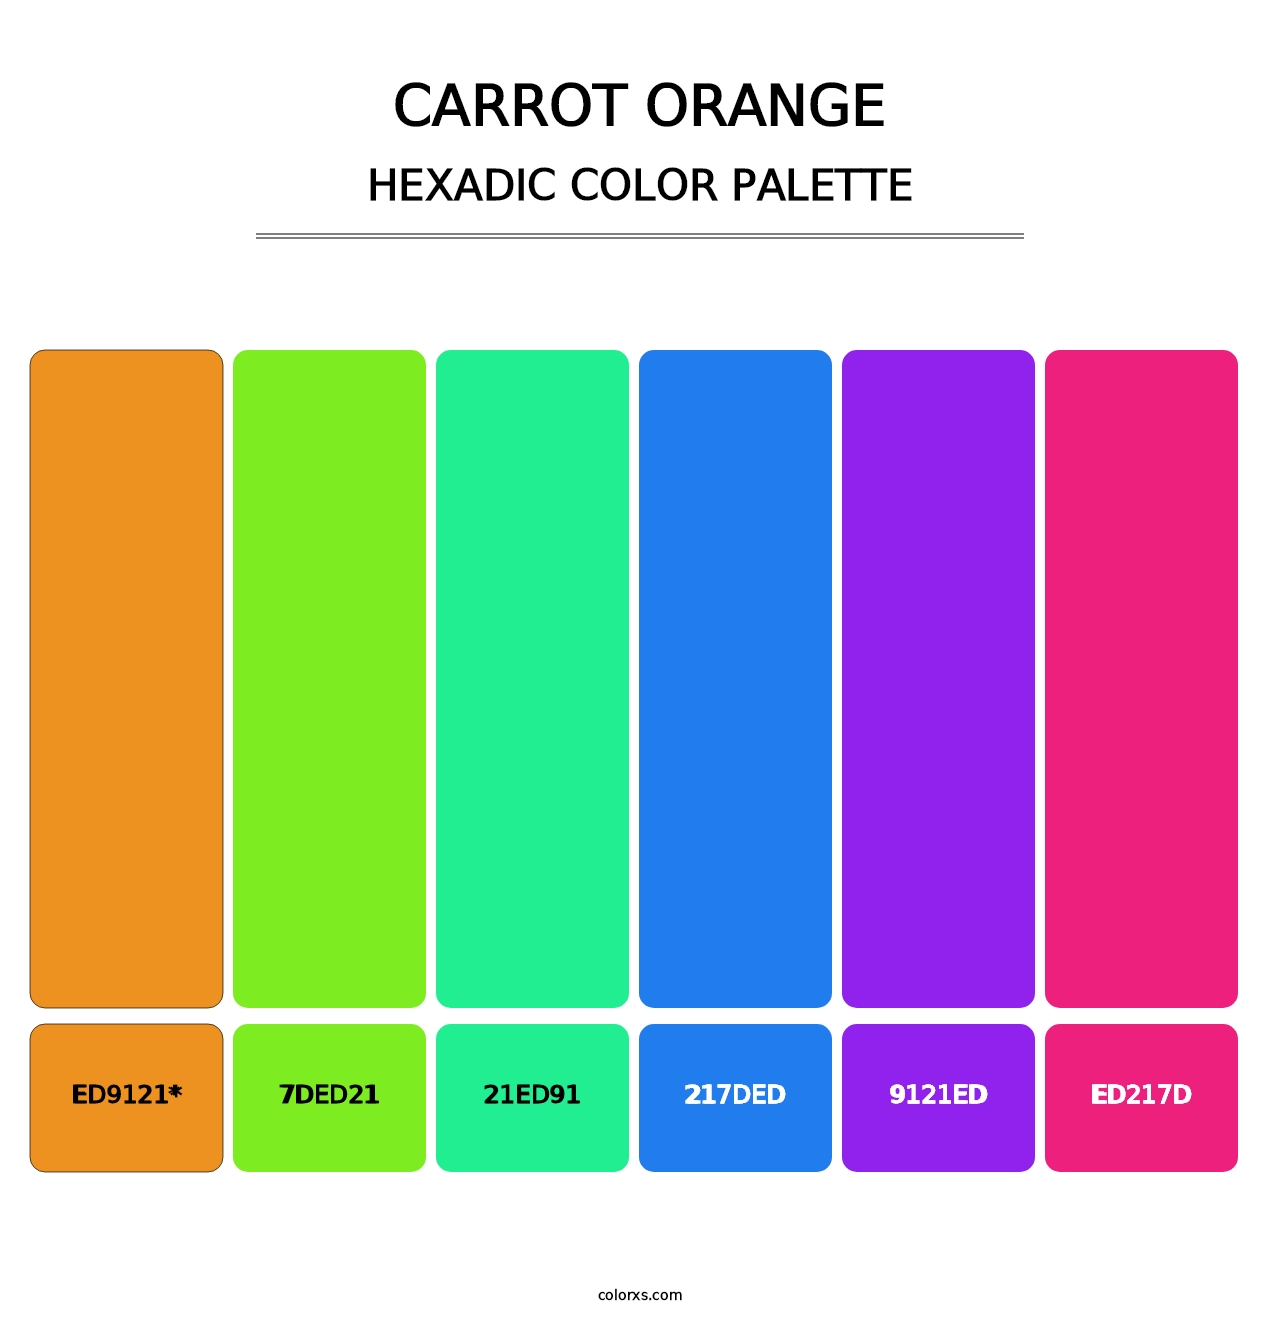 Carrot Orange - Hexadic Color Palette